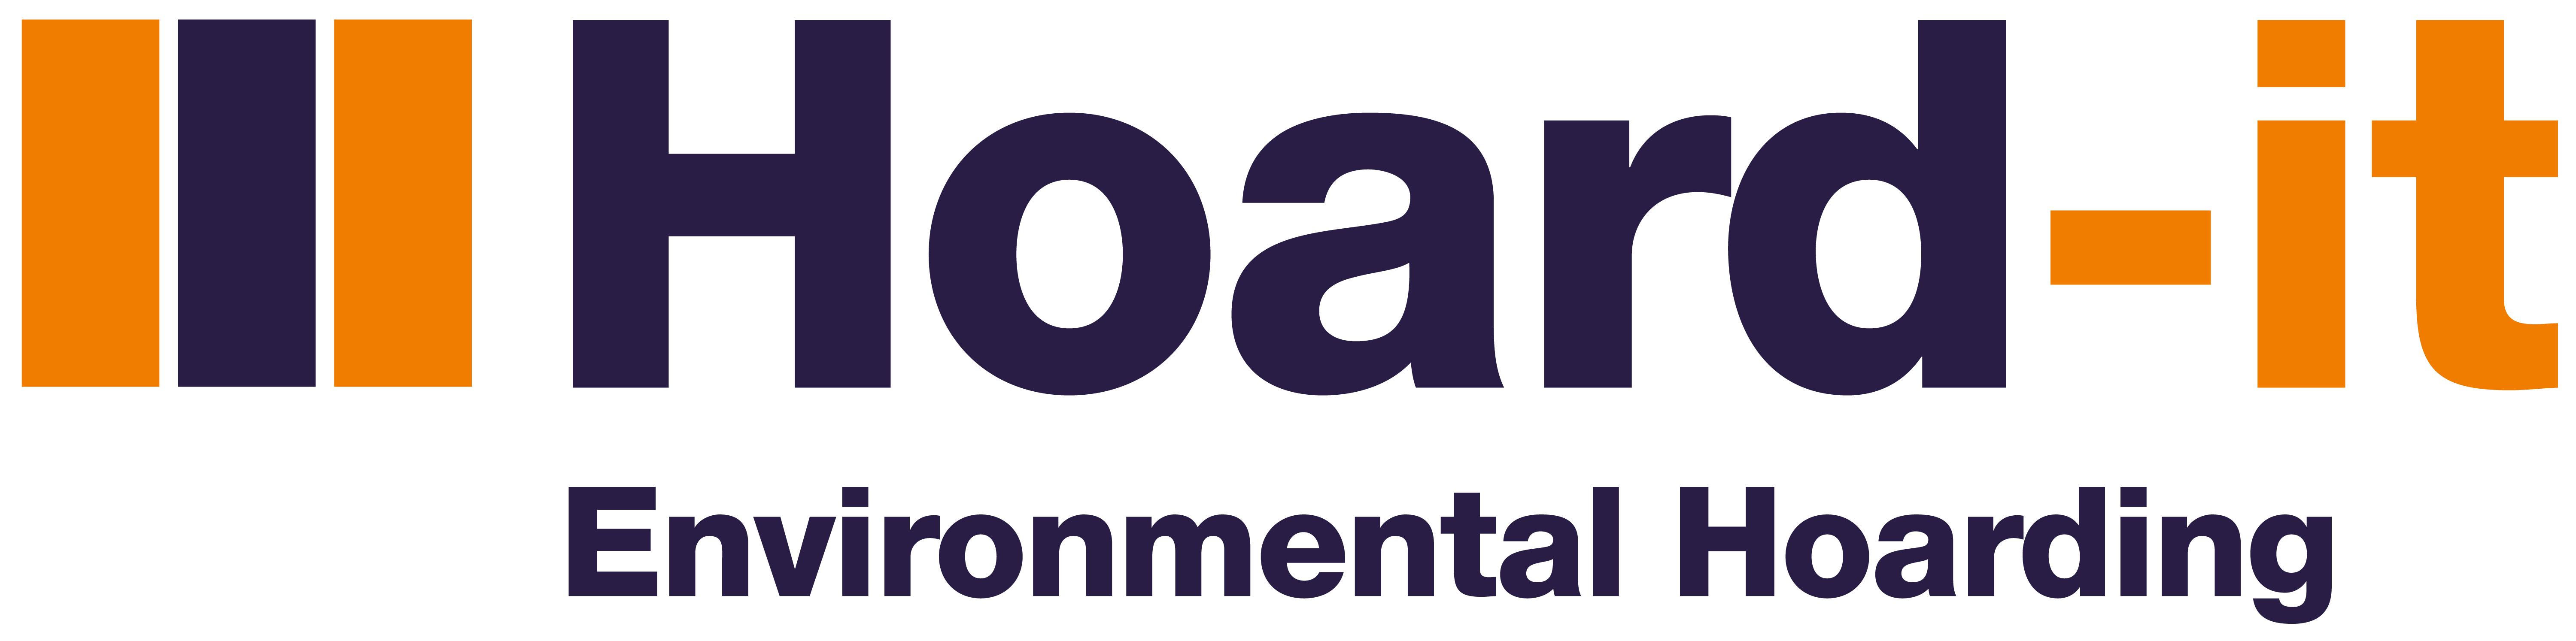 Hoard-it Logo